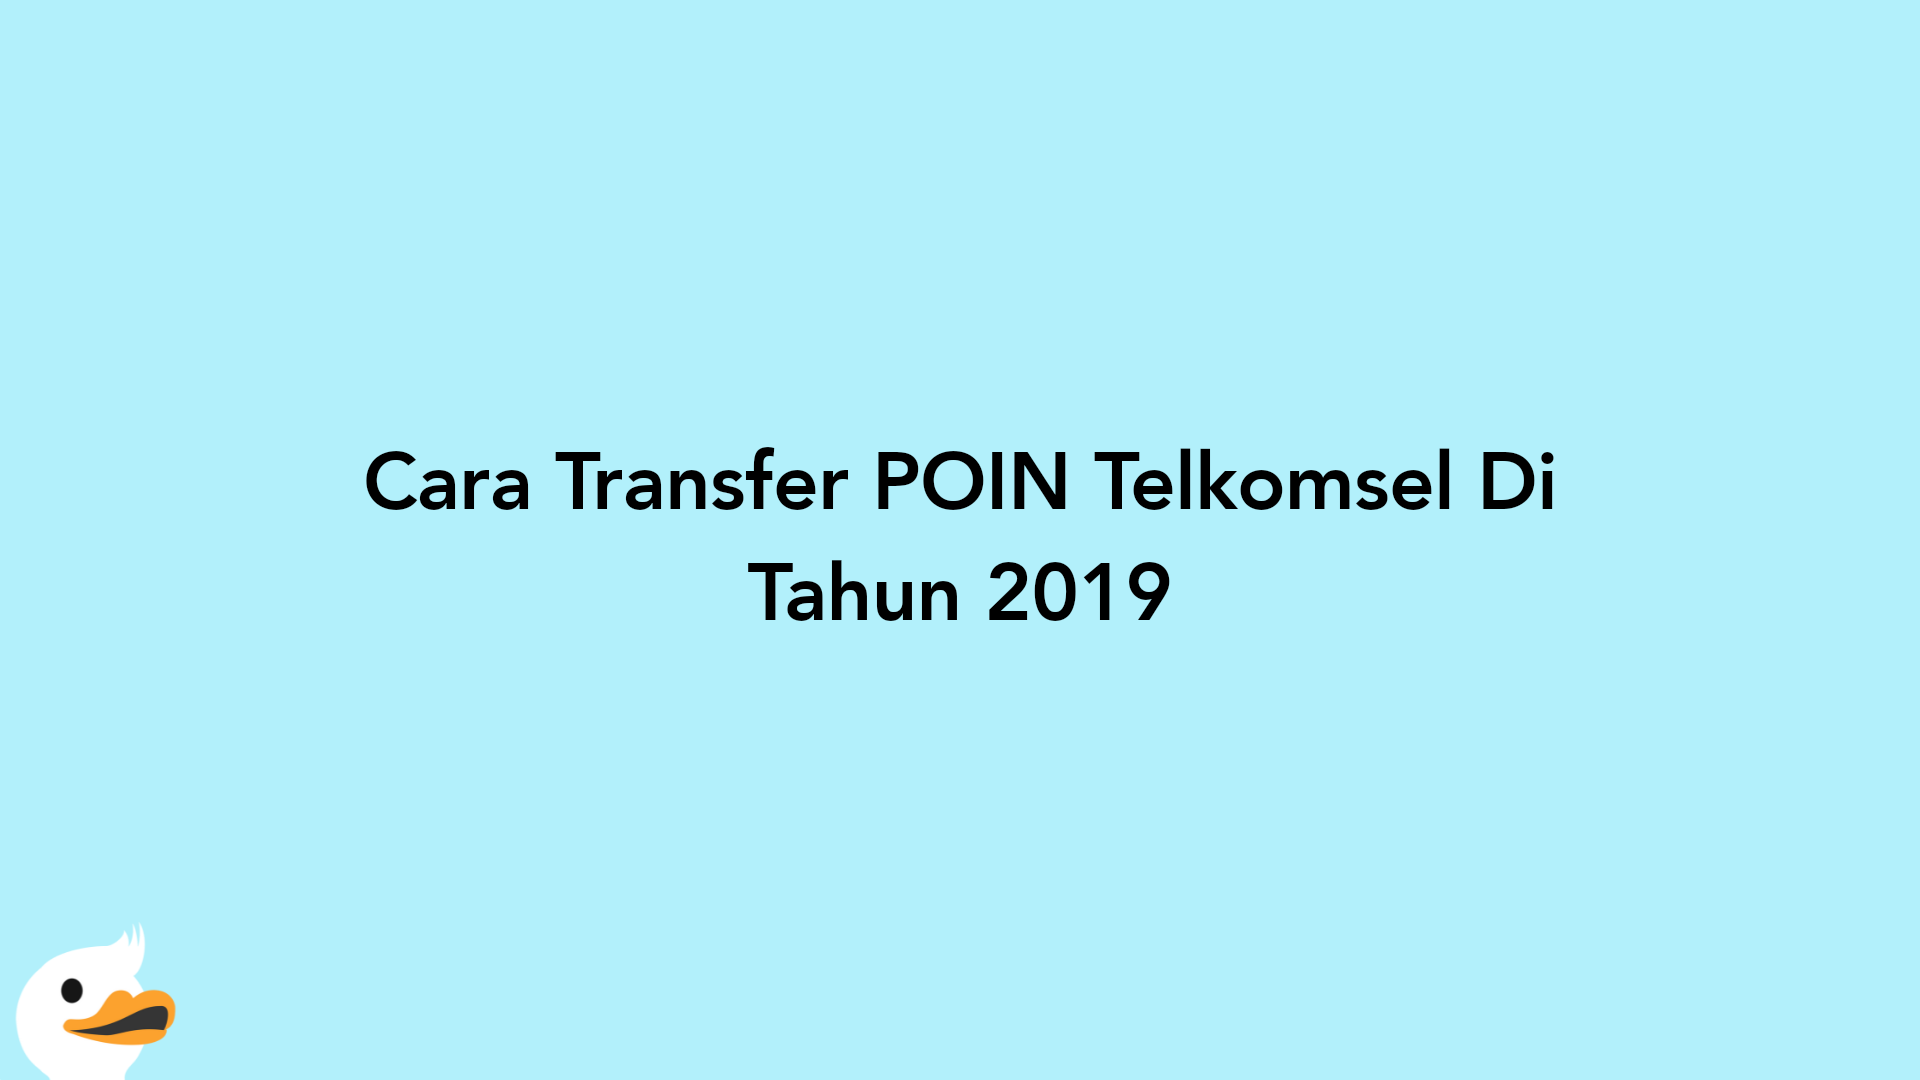 Cara Transfer POIN Telkomsel Di Tahun 2019